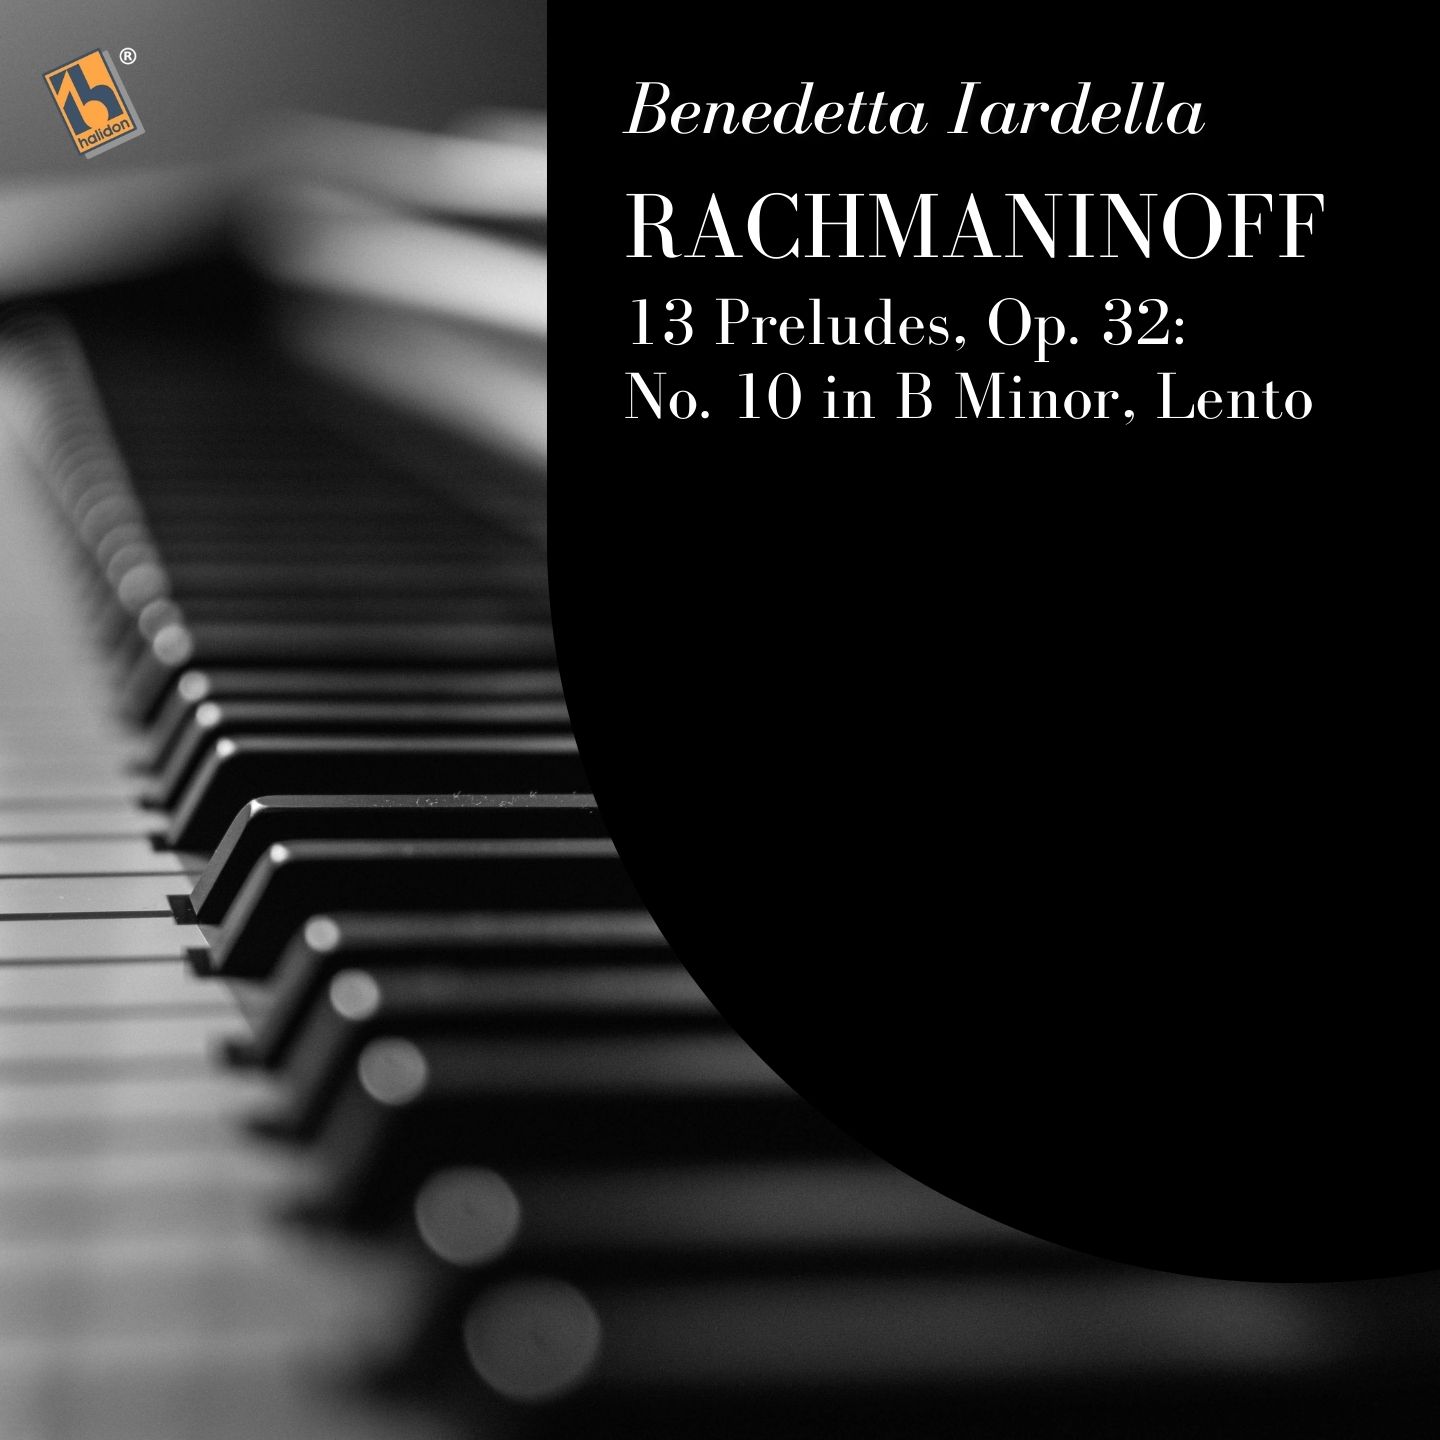 Rachmaninoff: 13 Preludes, Op. 32: No. 10 in B Minor, Lento